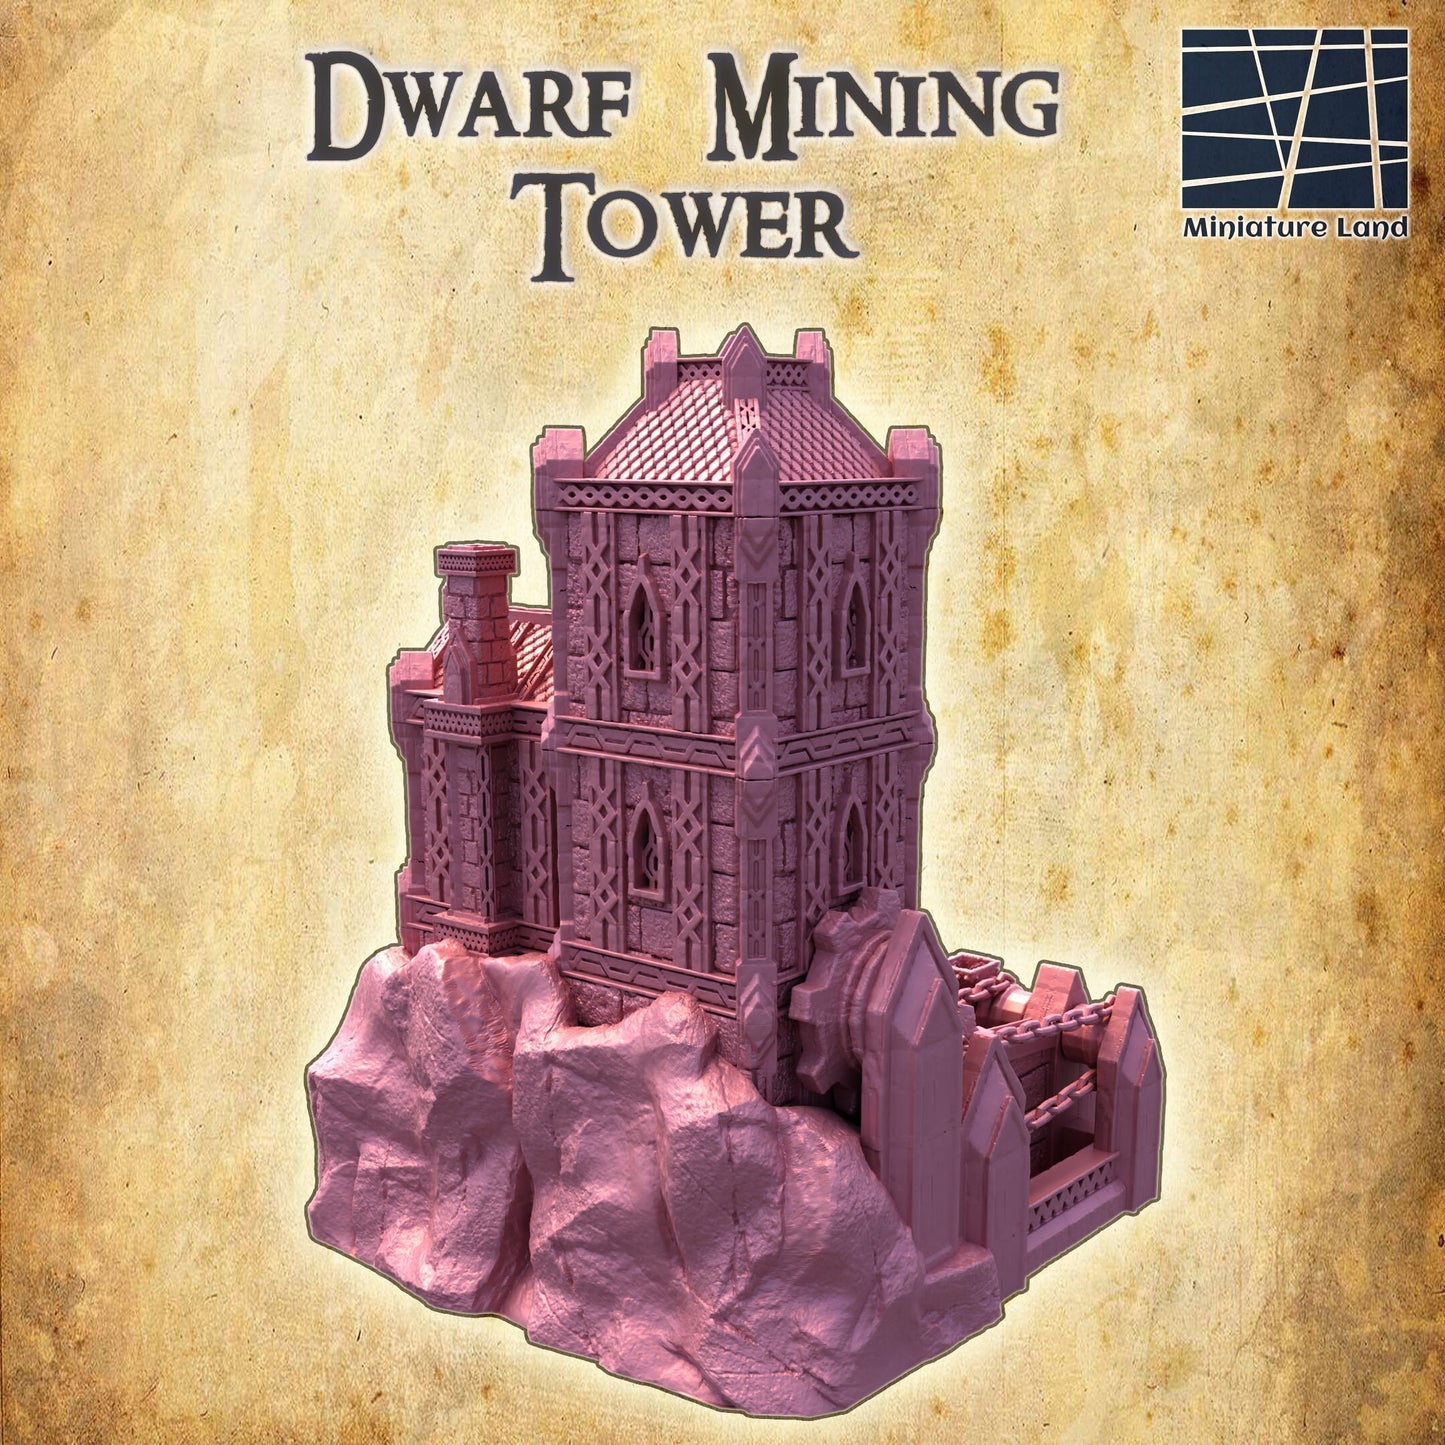 Dwarven Mining Tower. Dwarf, 28mm